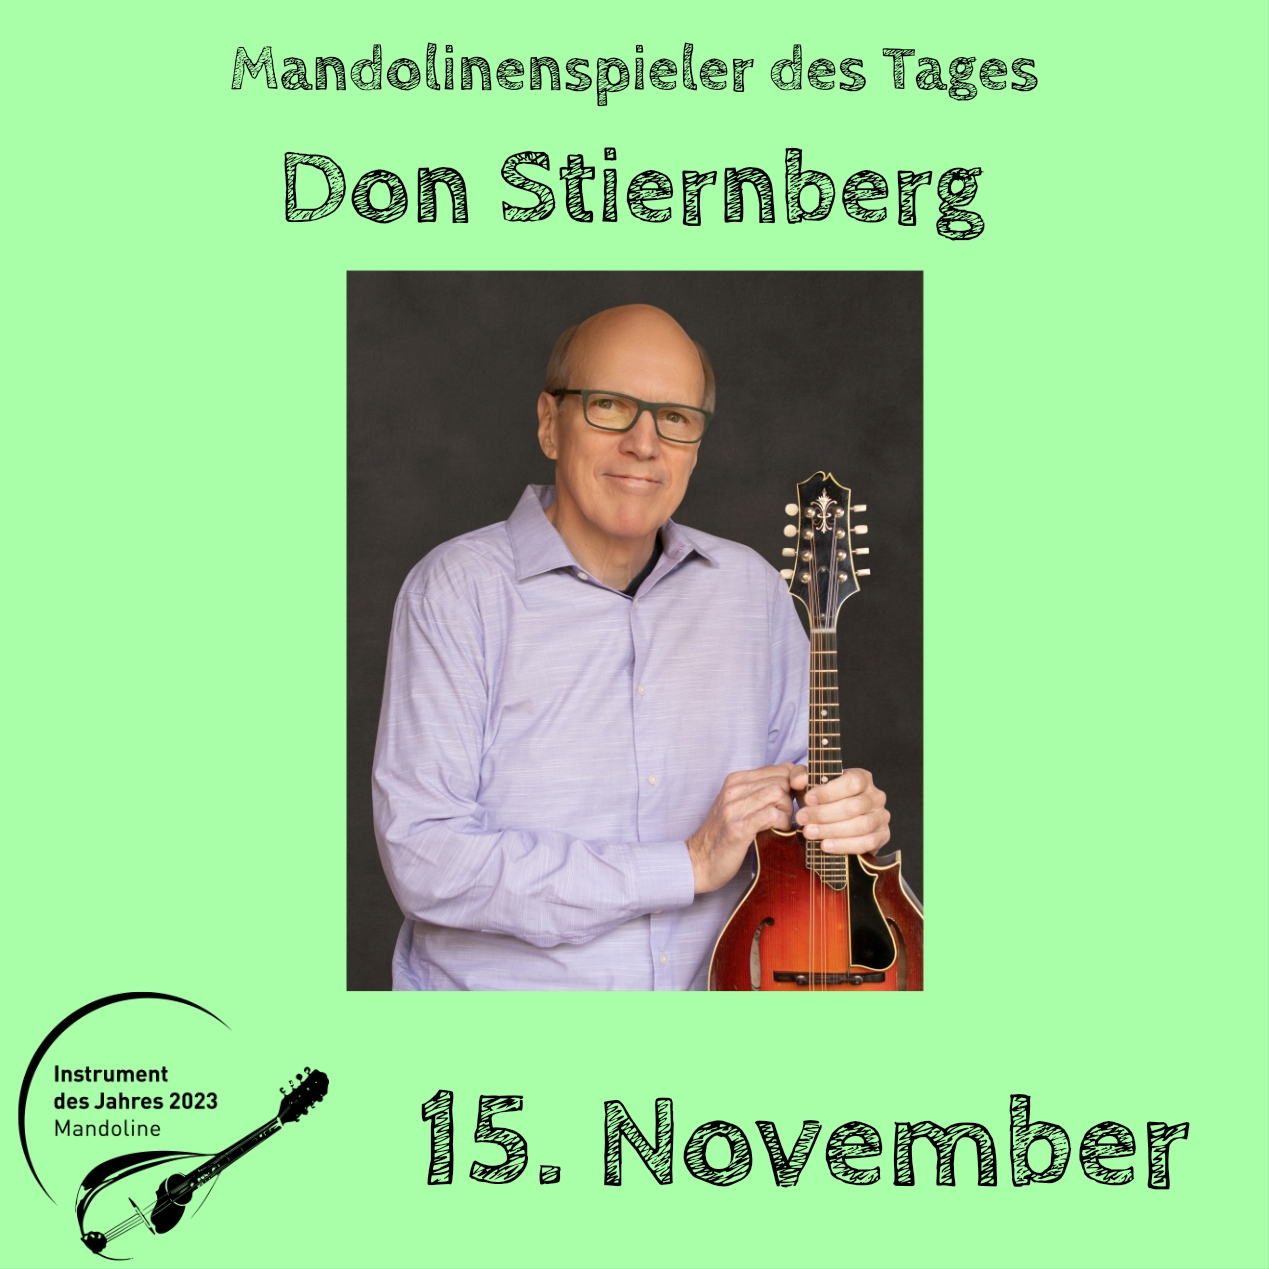 15. November - Don Stiernberg Instrument des Jahres 2023 Mandolinenspieler Mandolinenspielerin des Tages